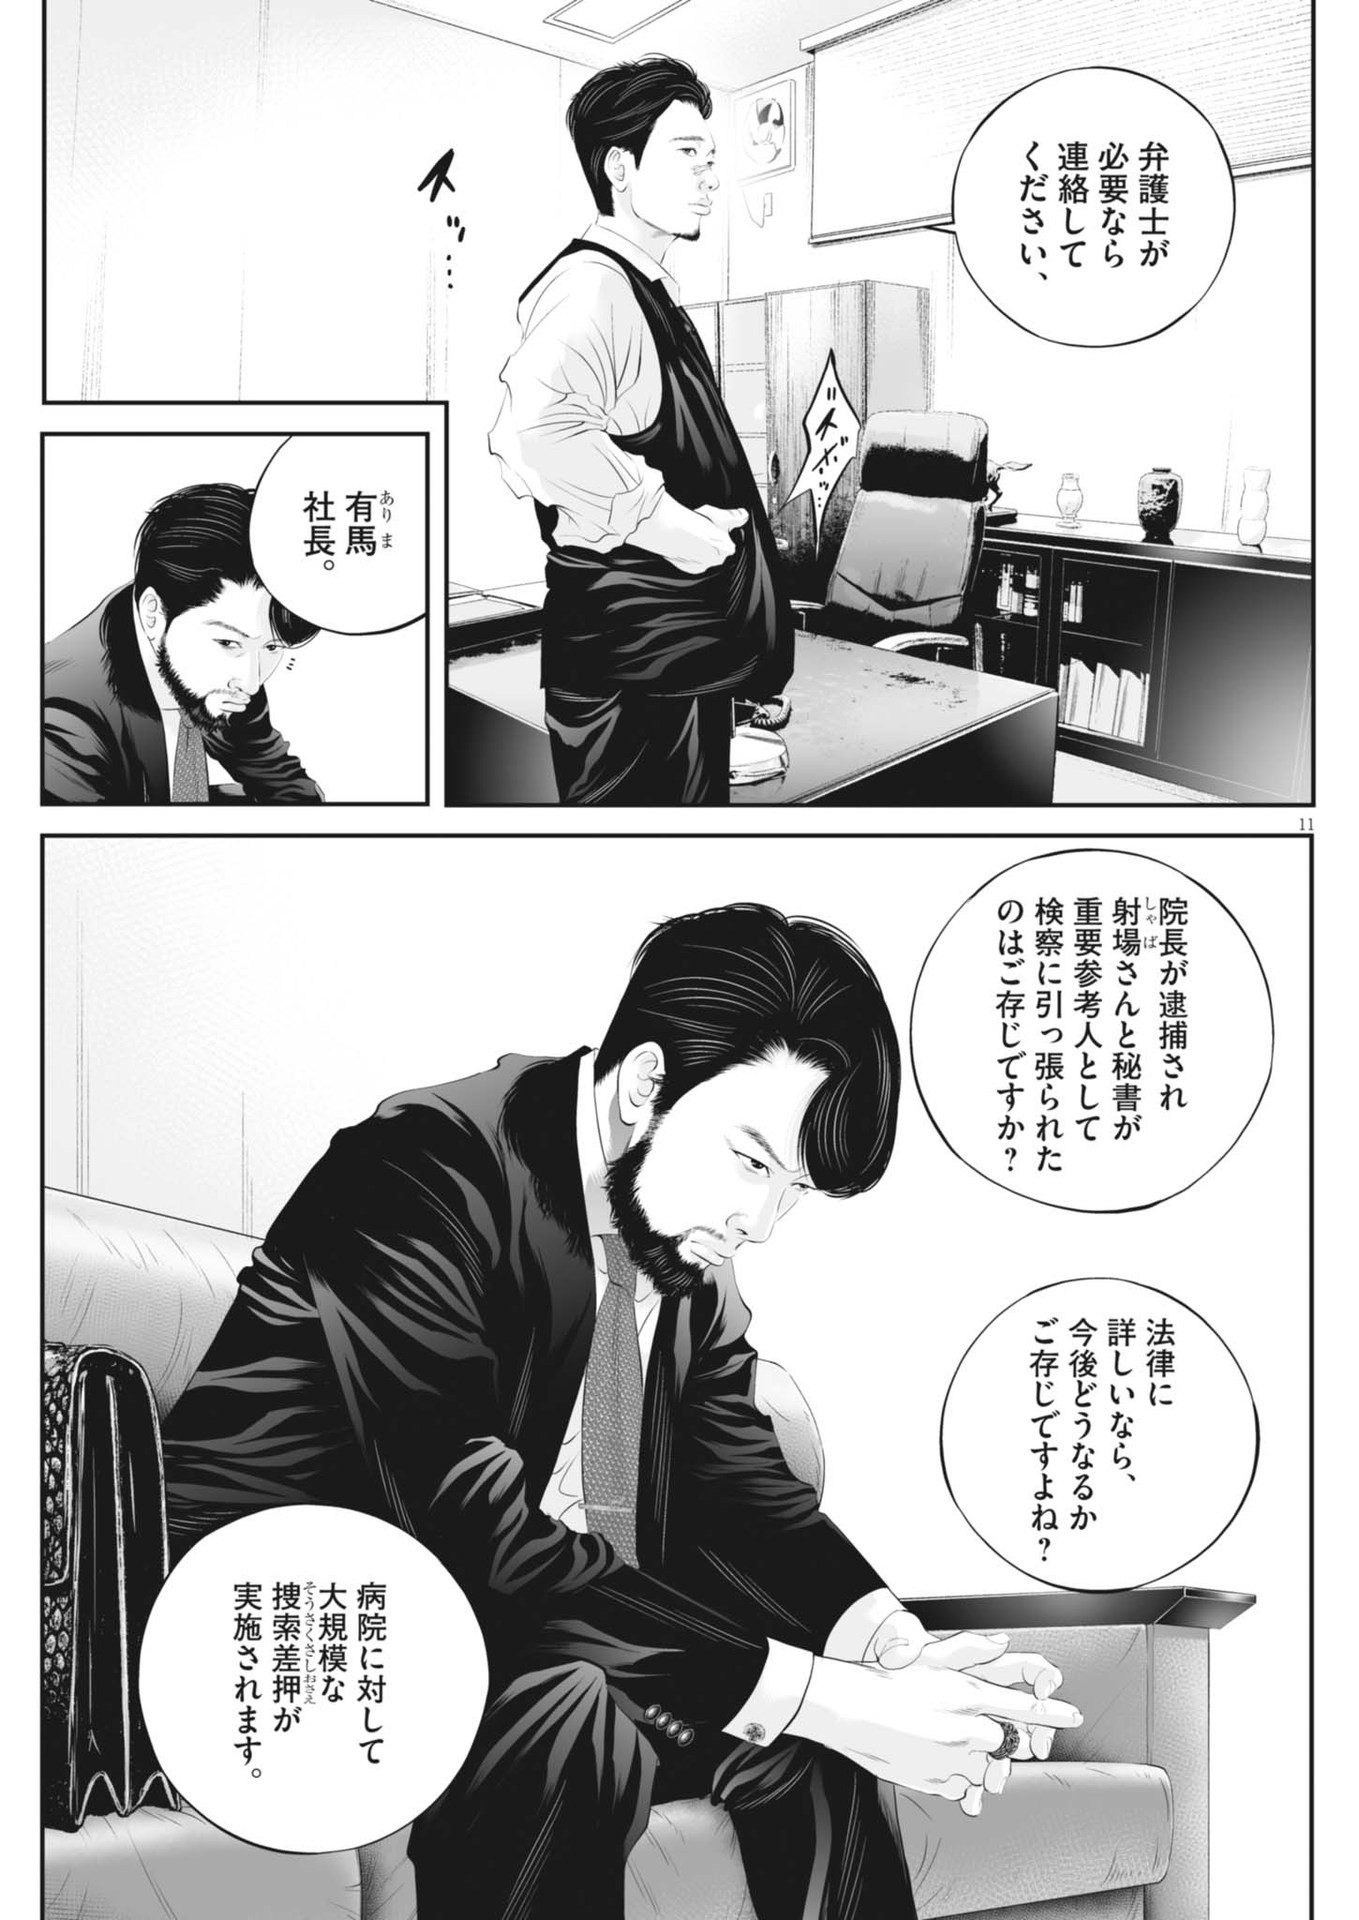 Kujou no Taizai - Chapter 102 - Page 11